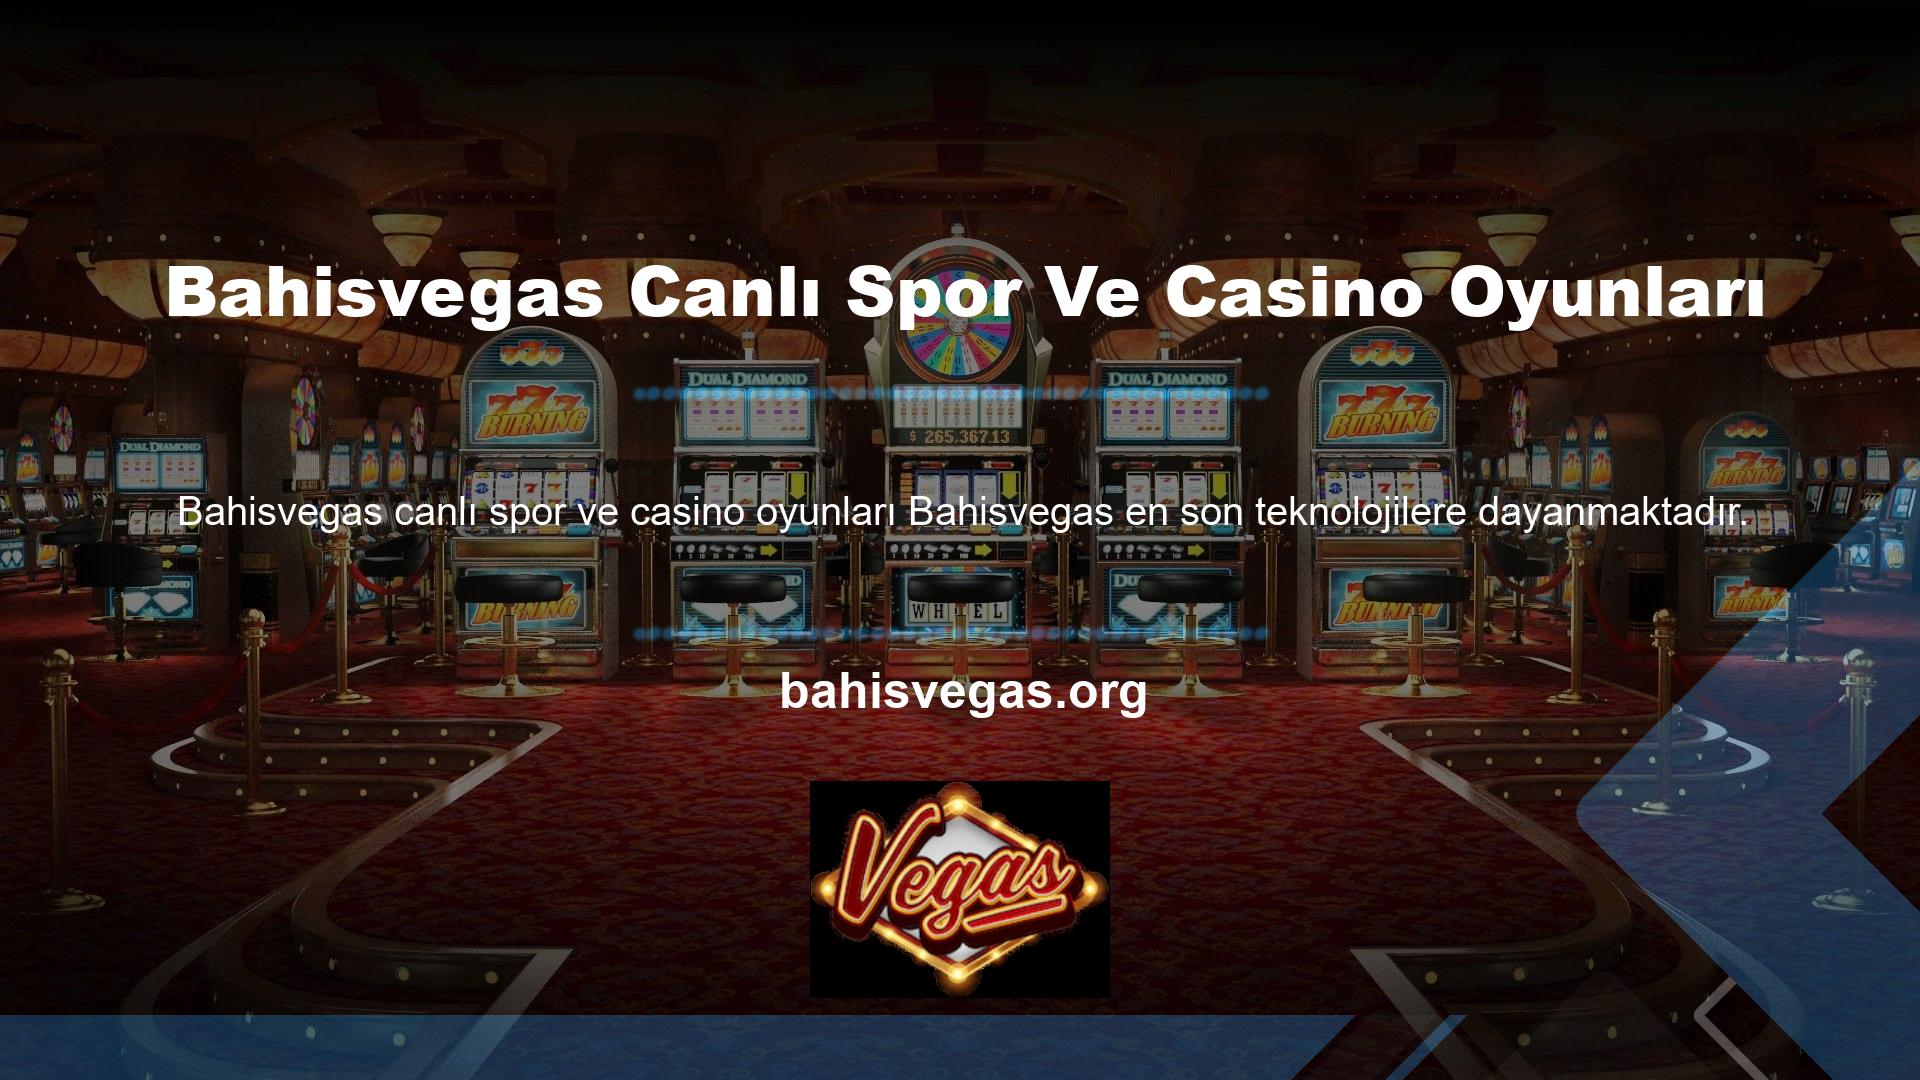 Canlı spor ve casino oyunları sitesi olan Bahisvegas ülkeye hizmet vermektedir